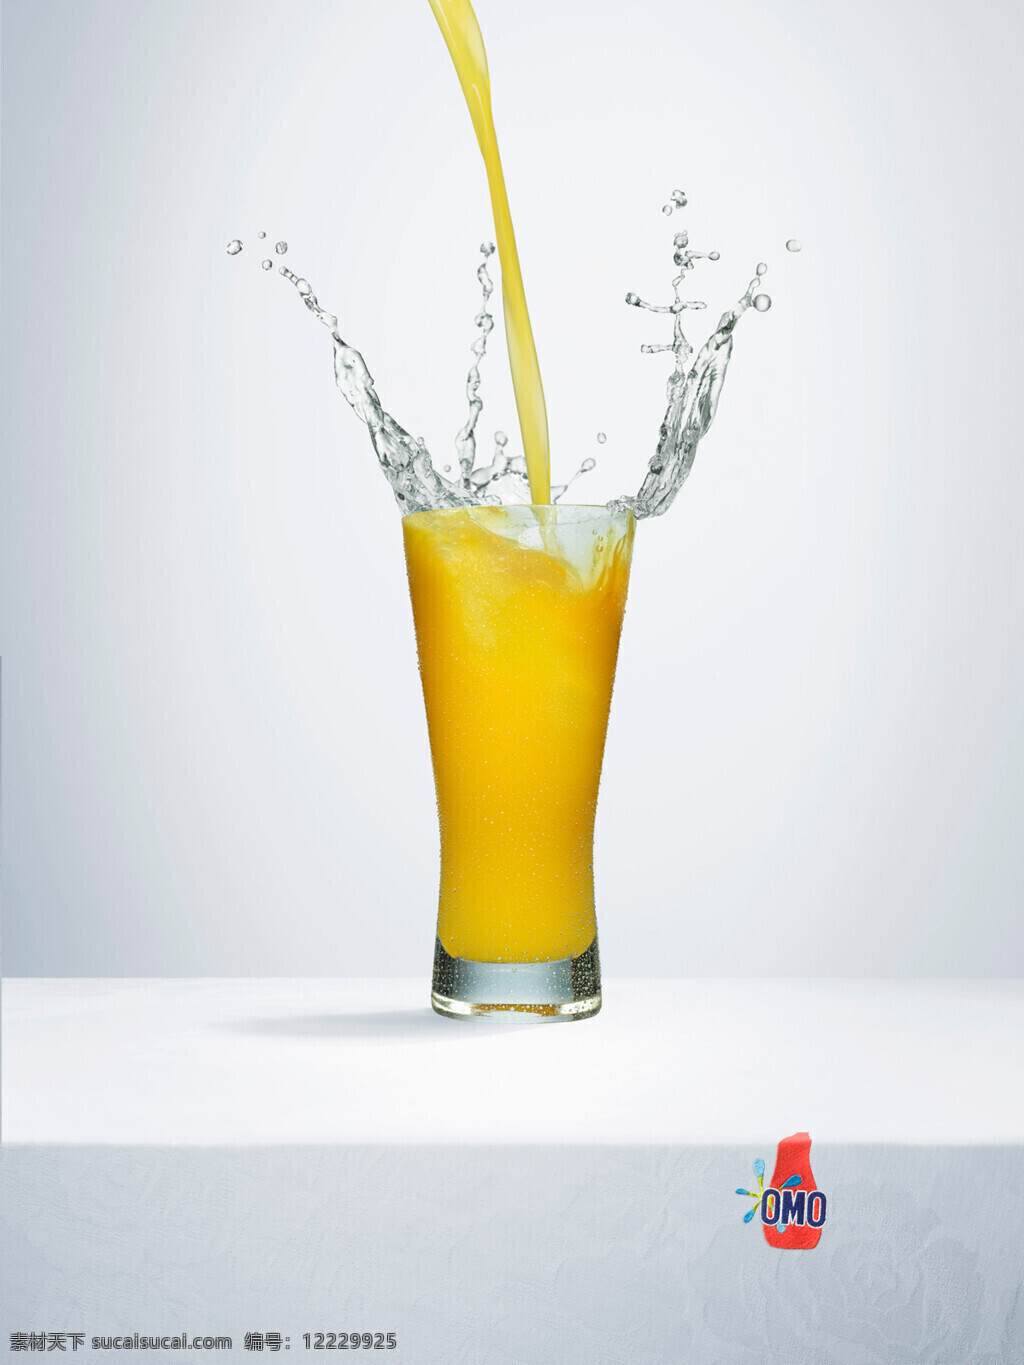 橙汁 飞溅 水花 洗衣粉 洗衣粉广告 饮料 广告 模板下载 omo psd源文件 餐饮素材